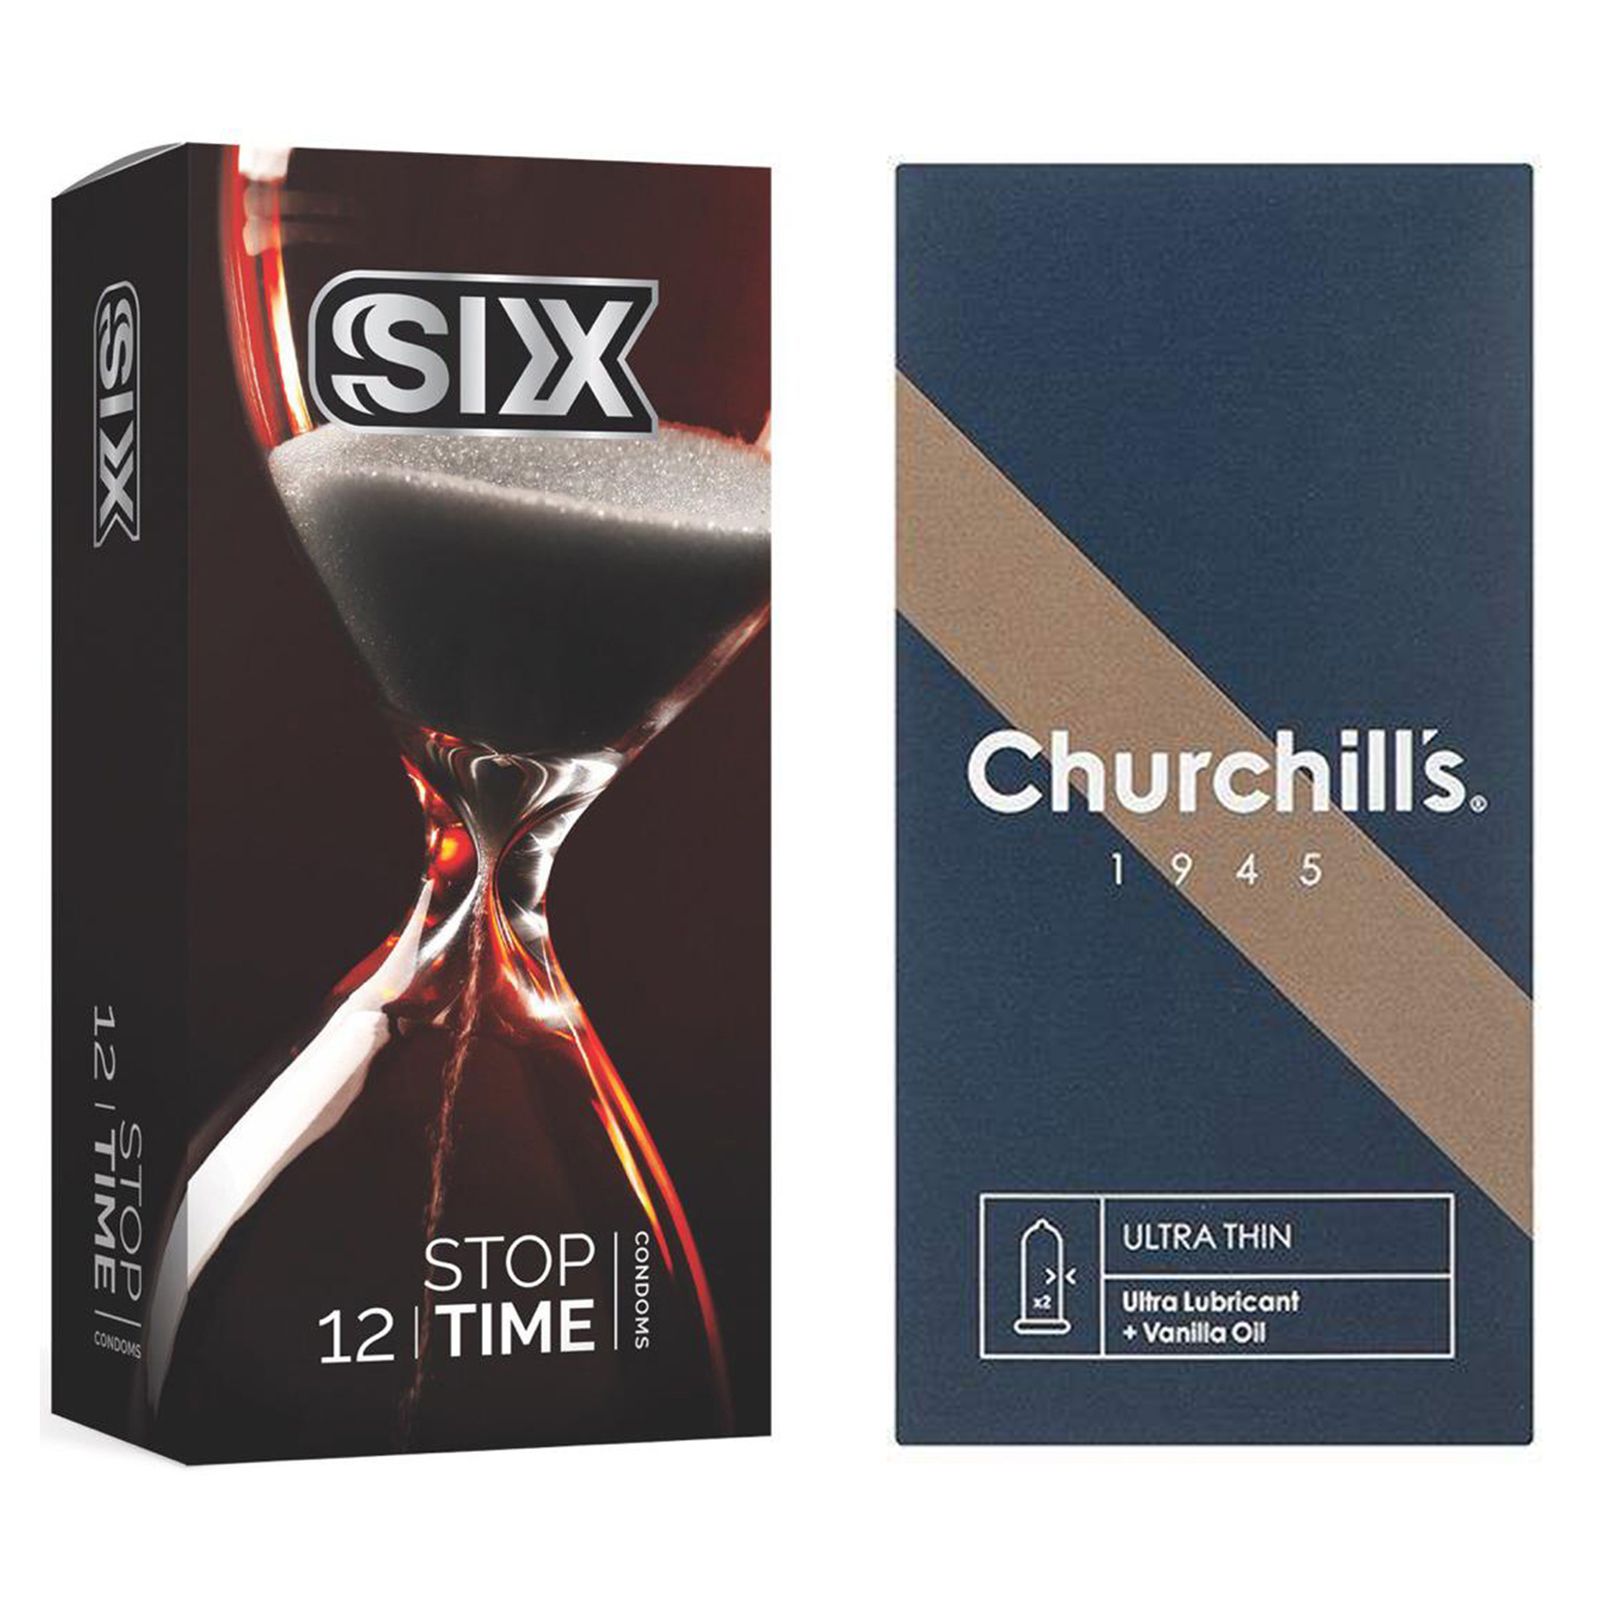 کاندوم چرچیلز مدل Ultra Thin بسته 12 عددی به همراه کاندوم سیکس مدل کلاسیک تاخیری بسته 12 عددی  -  - 1